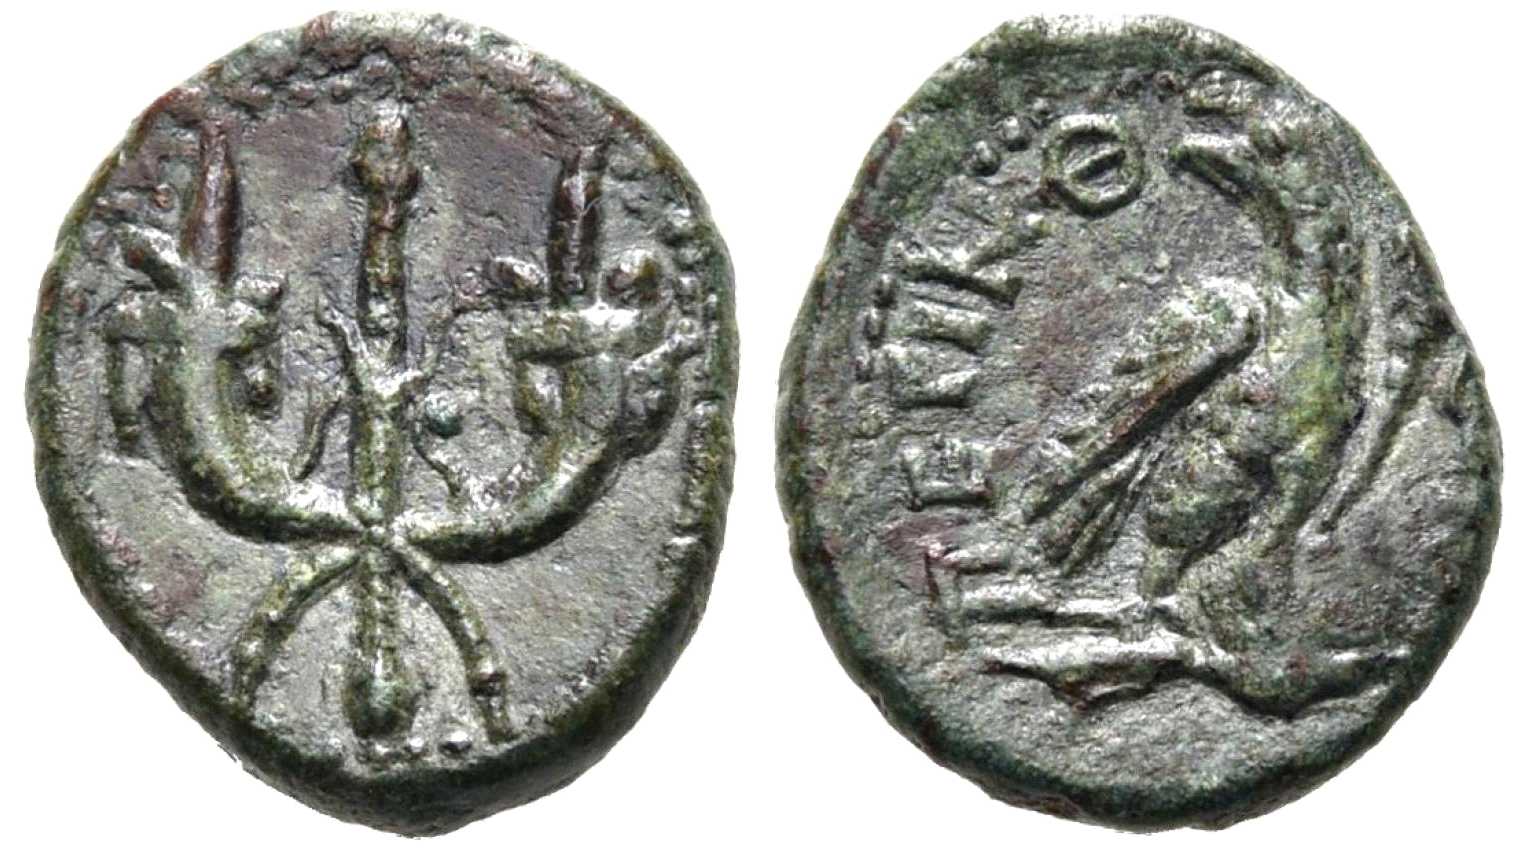 6711 Perinthus Thracia Dominium Romanum